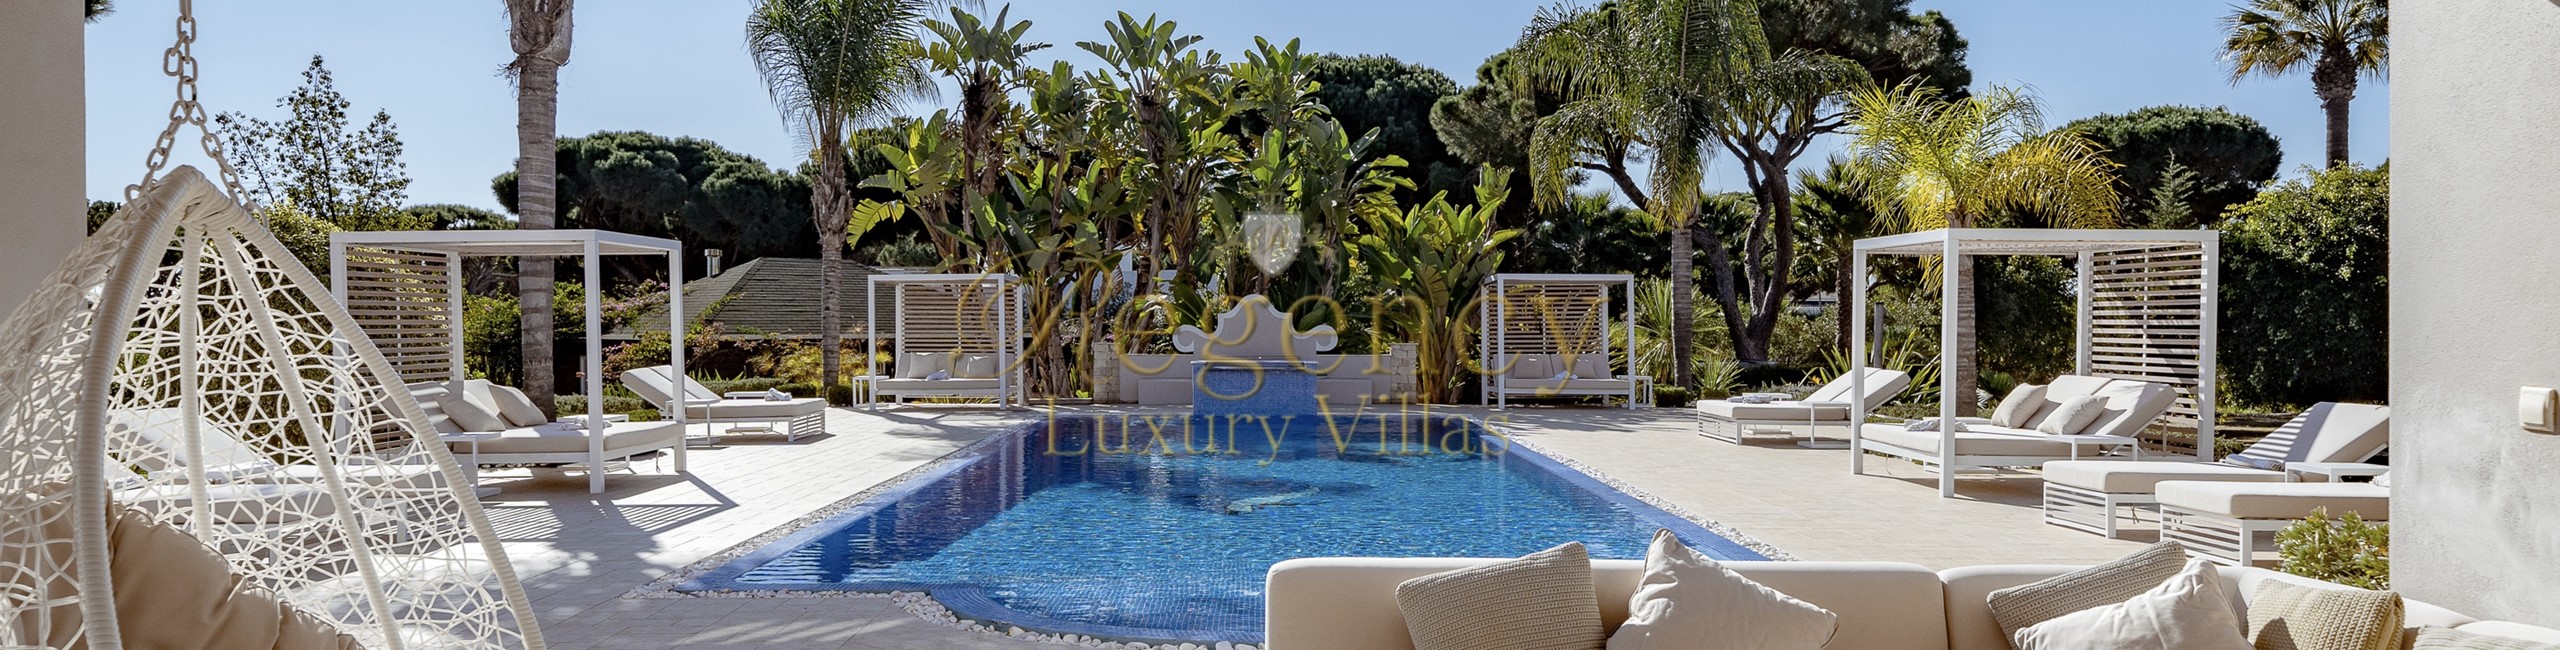 Luxury 6 Bedroom Villa To Rent In Fonte Santa Near Vale Do Lobo Algarve Portugal